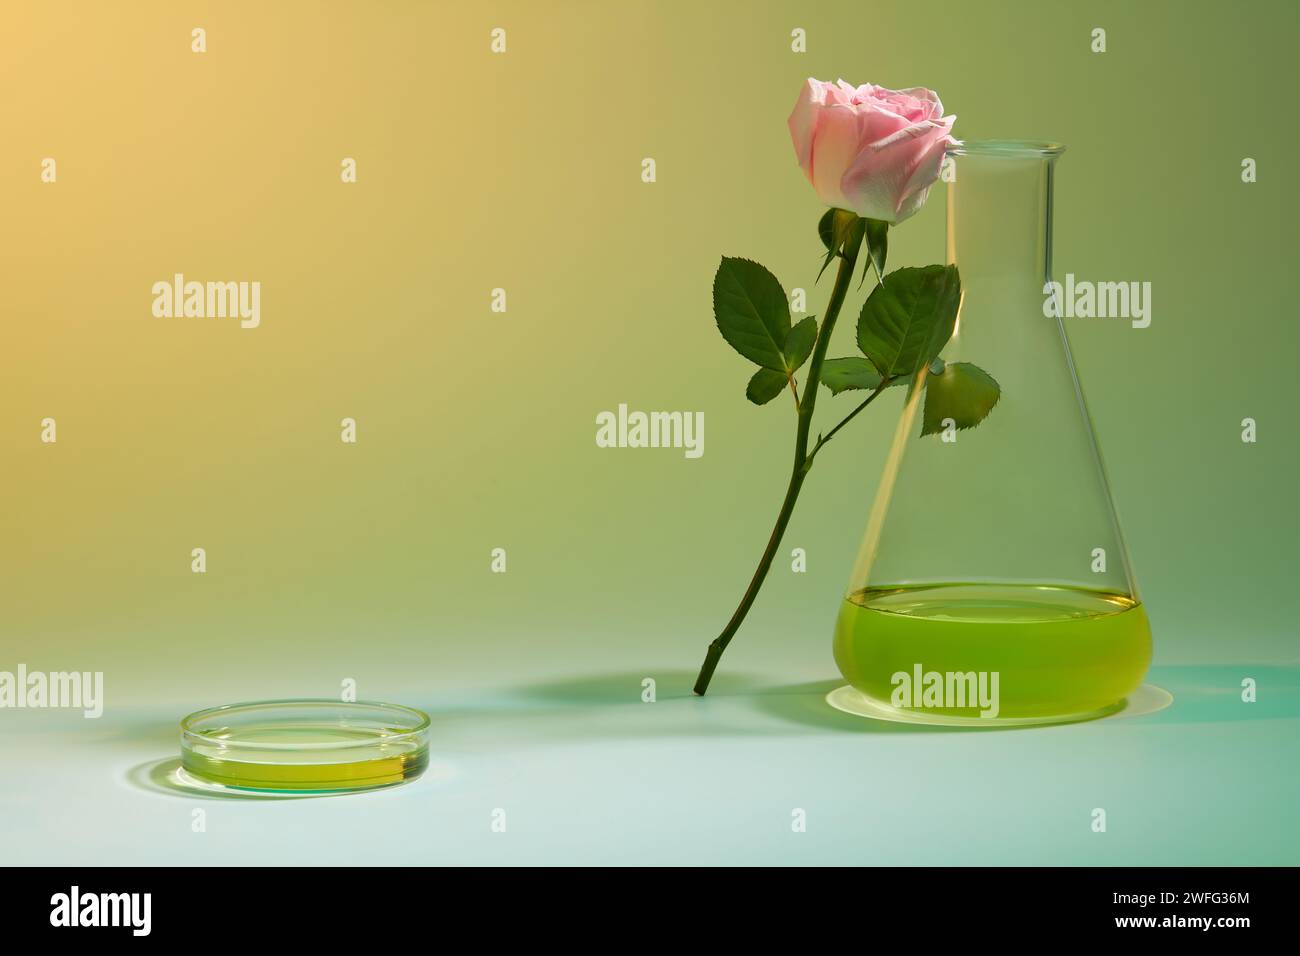 Ein Rosenzweig, der sich auf eine erlenmeyerkolbe stützt, verziert mit einer Petrischale aus Glas, die gelbe Flüssigkeit enthält. Ätherisches Rosenöl wirkt entspannend auf mA Stockfoto